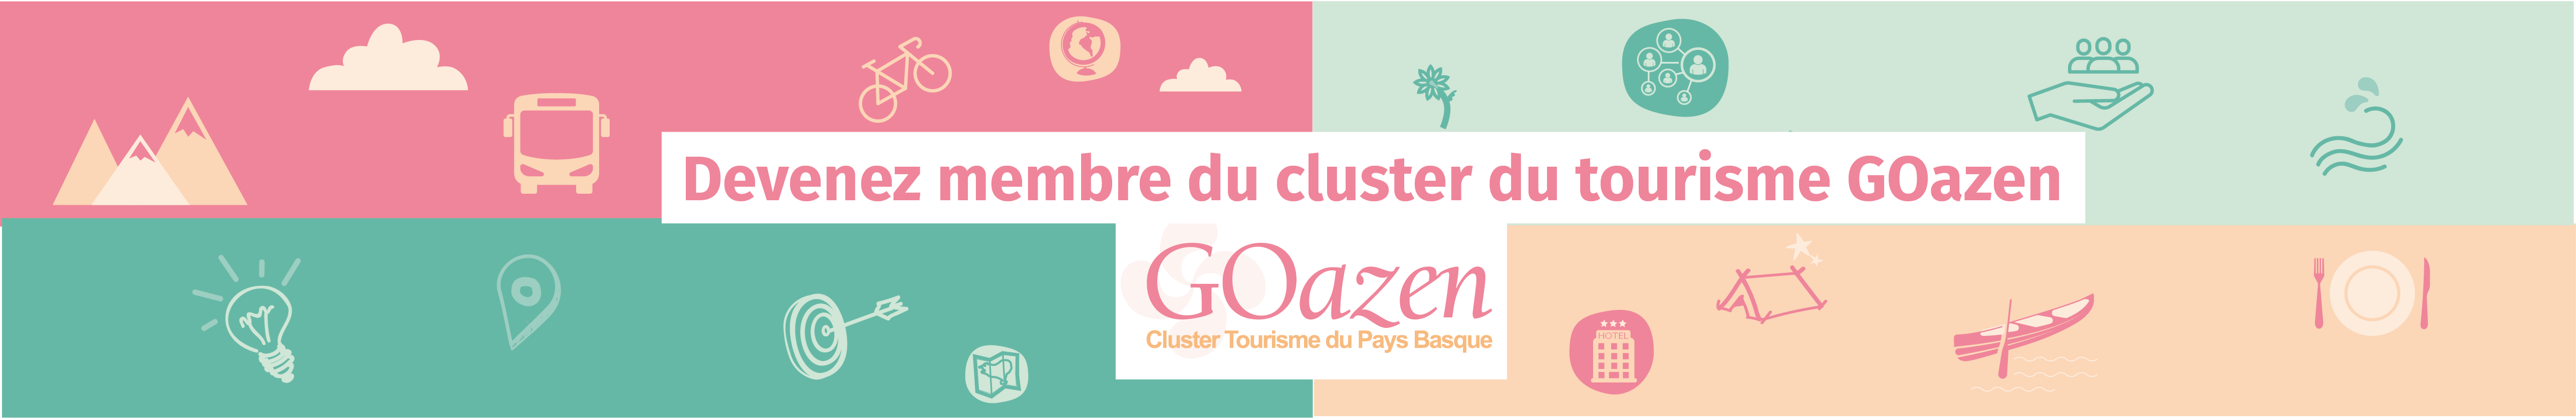 cluster-tourisme-goazen